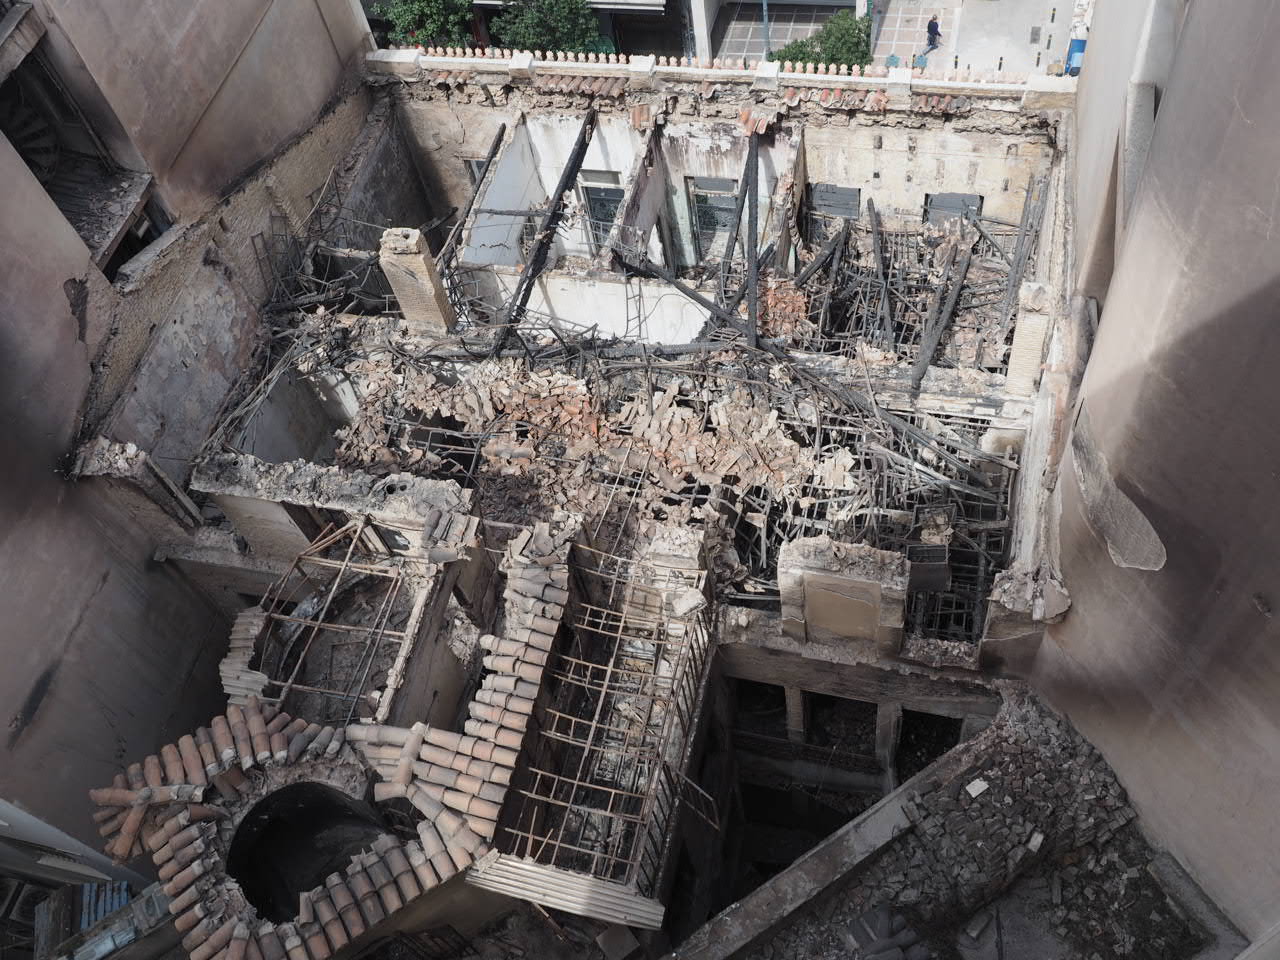 αποκαθίσταται η οικία του αλέξανδρου σούτσου- θα φιλοξενήσει μέρος των συλλογών του θεατρικού μουσείου